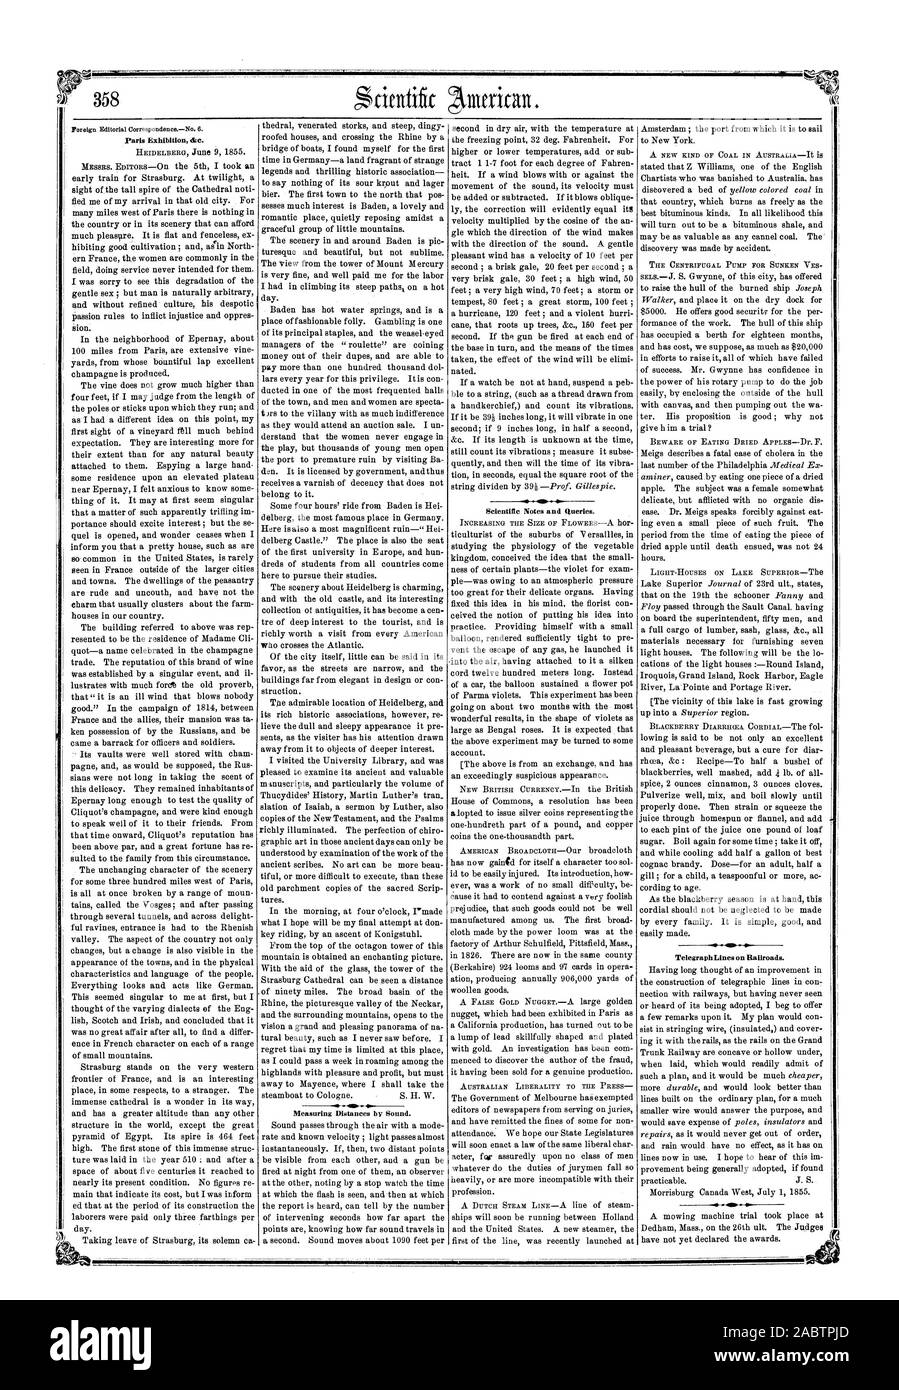 Earls Ausstellung & C. Entfernungen messen mit Sound. Wissenschaftliche Hinweise und Anfragen. Telegrafenleitungen auf Eisenbahnen., Scientific American, 1855-07-14 Stockfoto